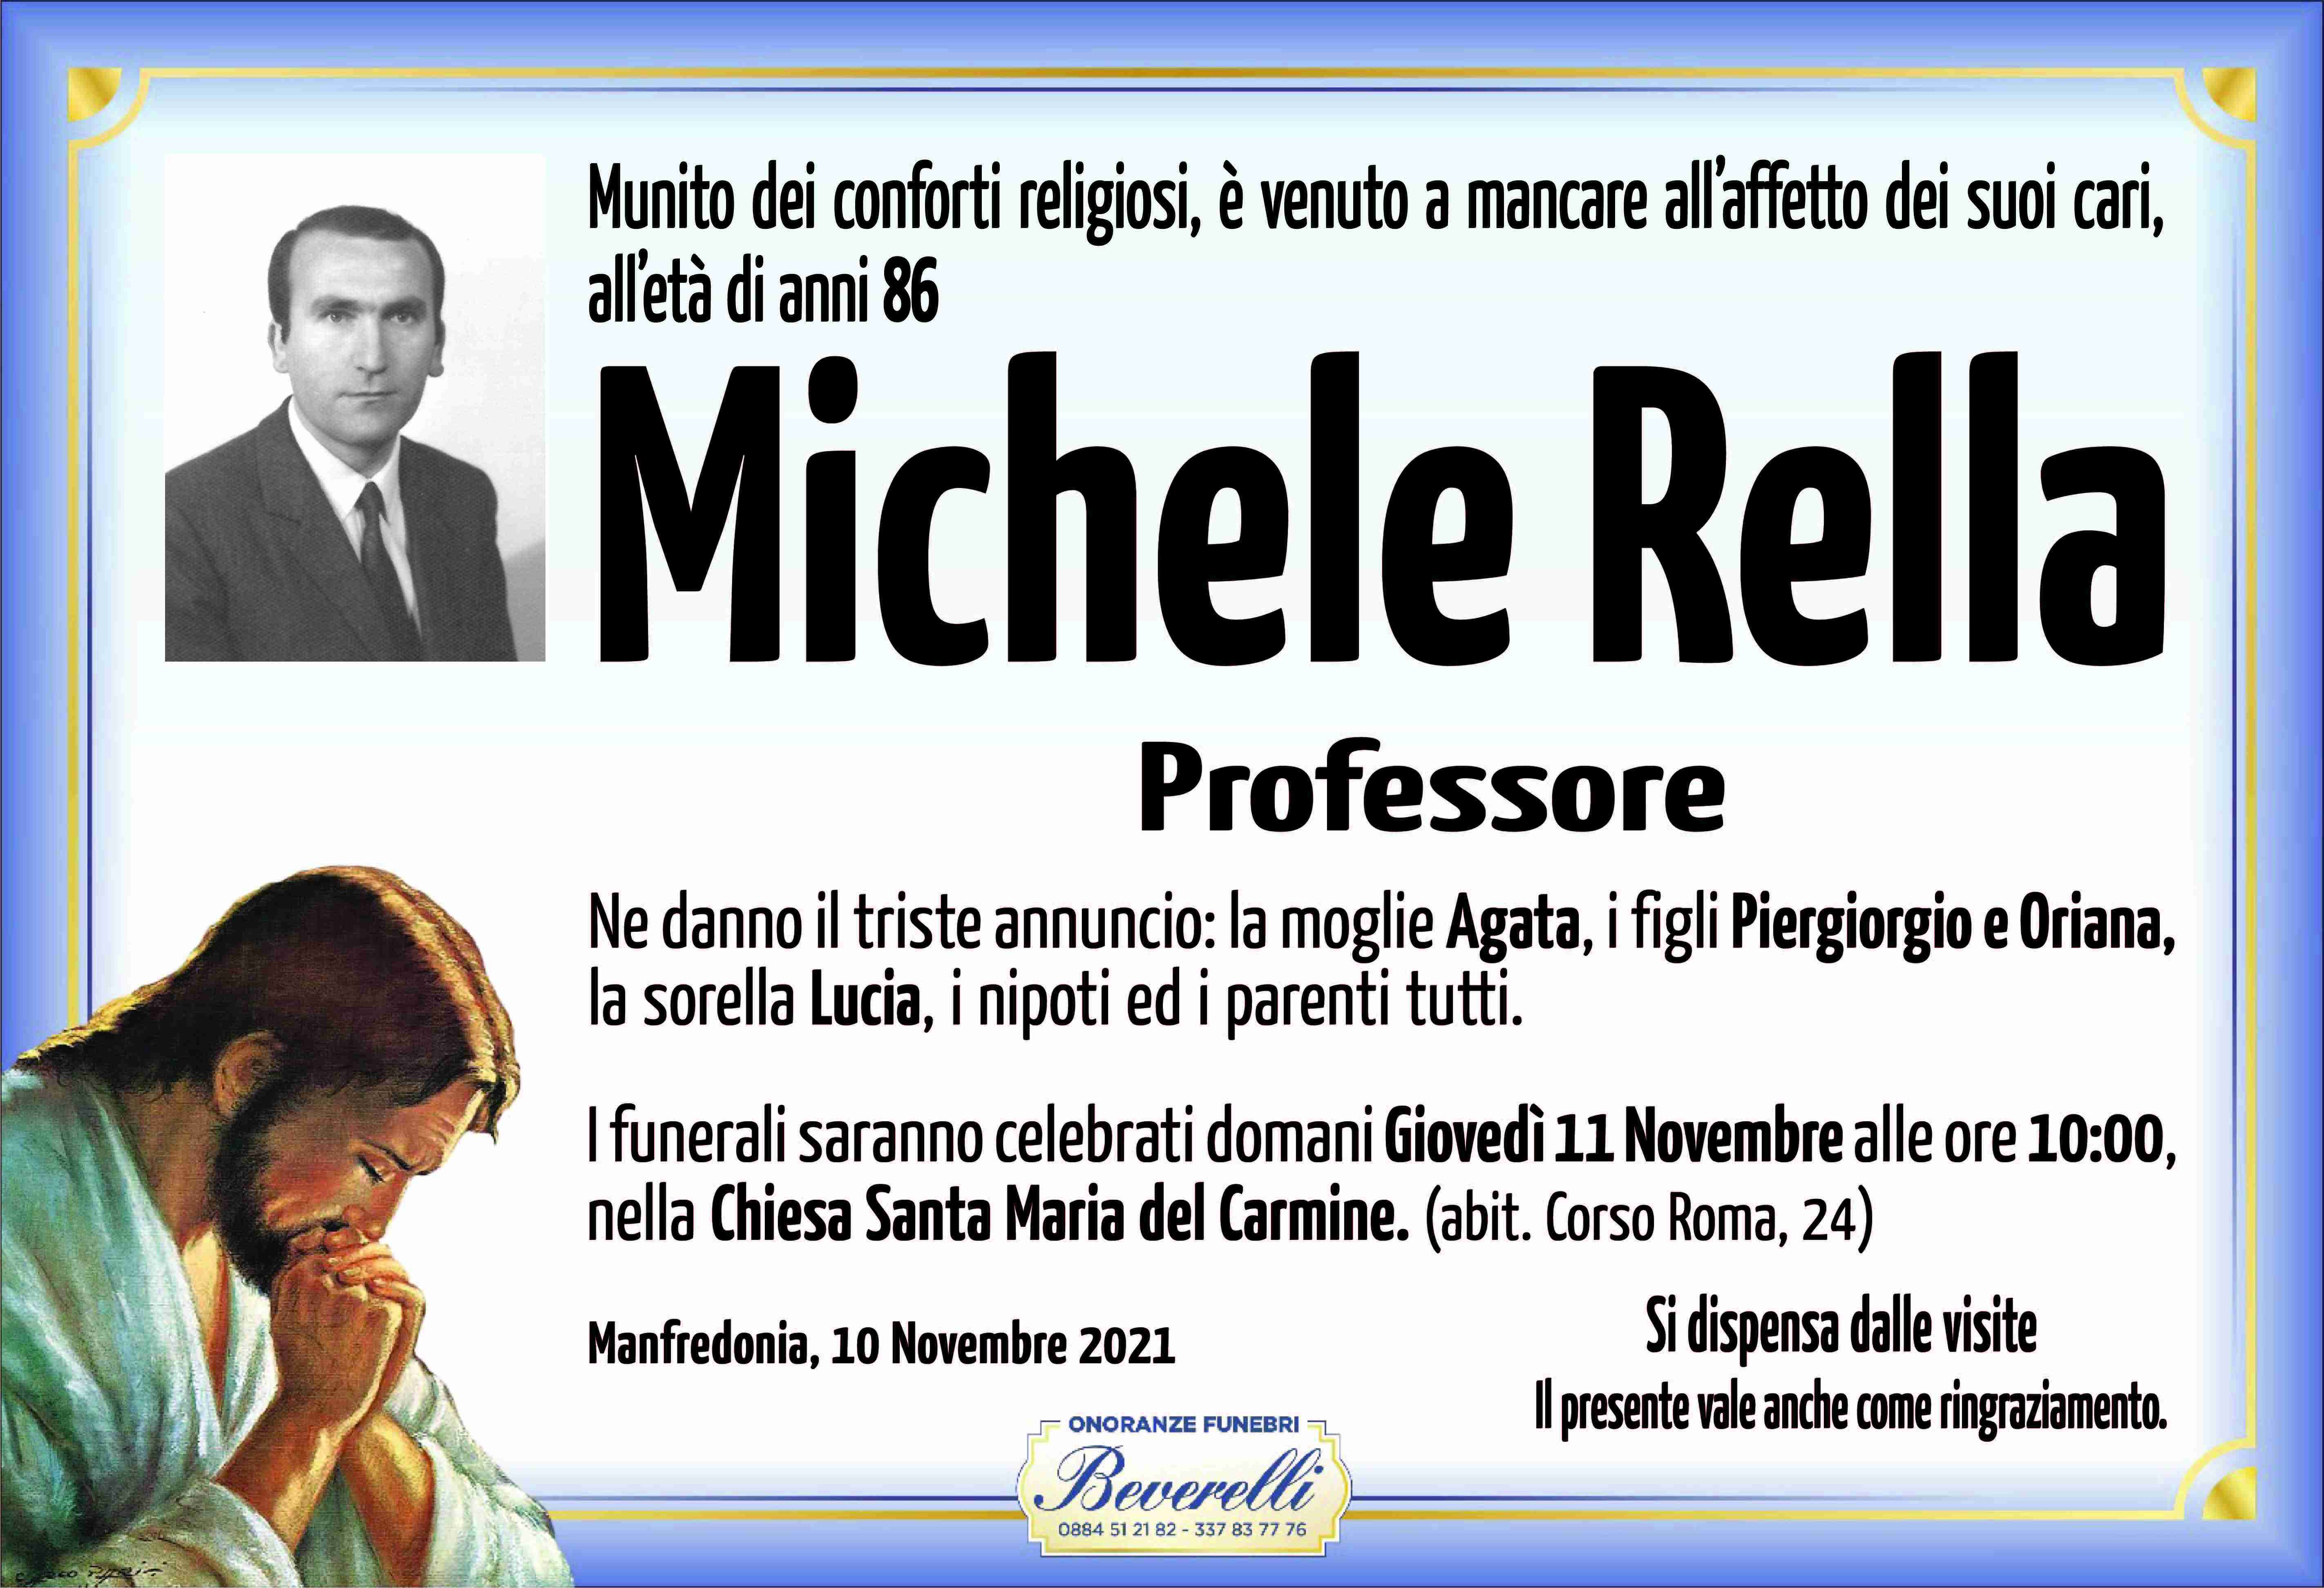 Michele Rella